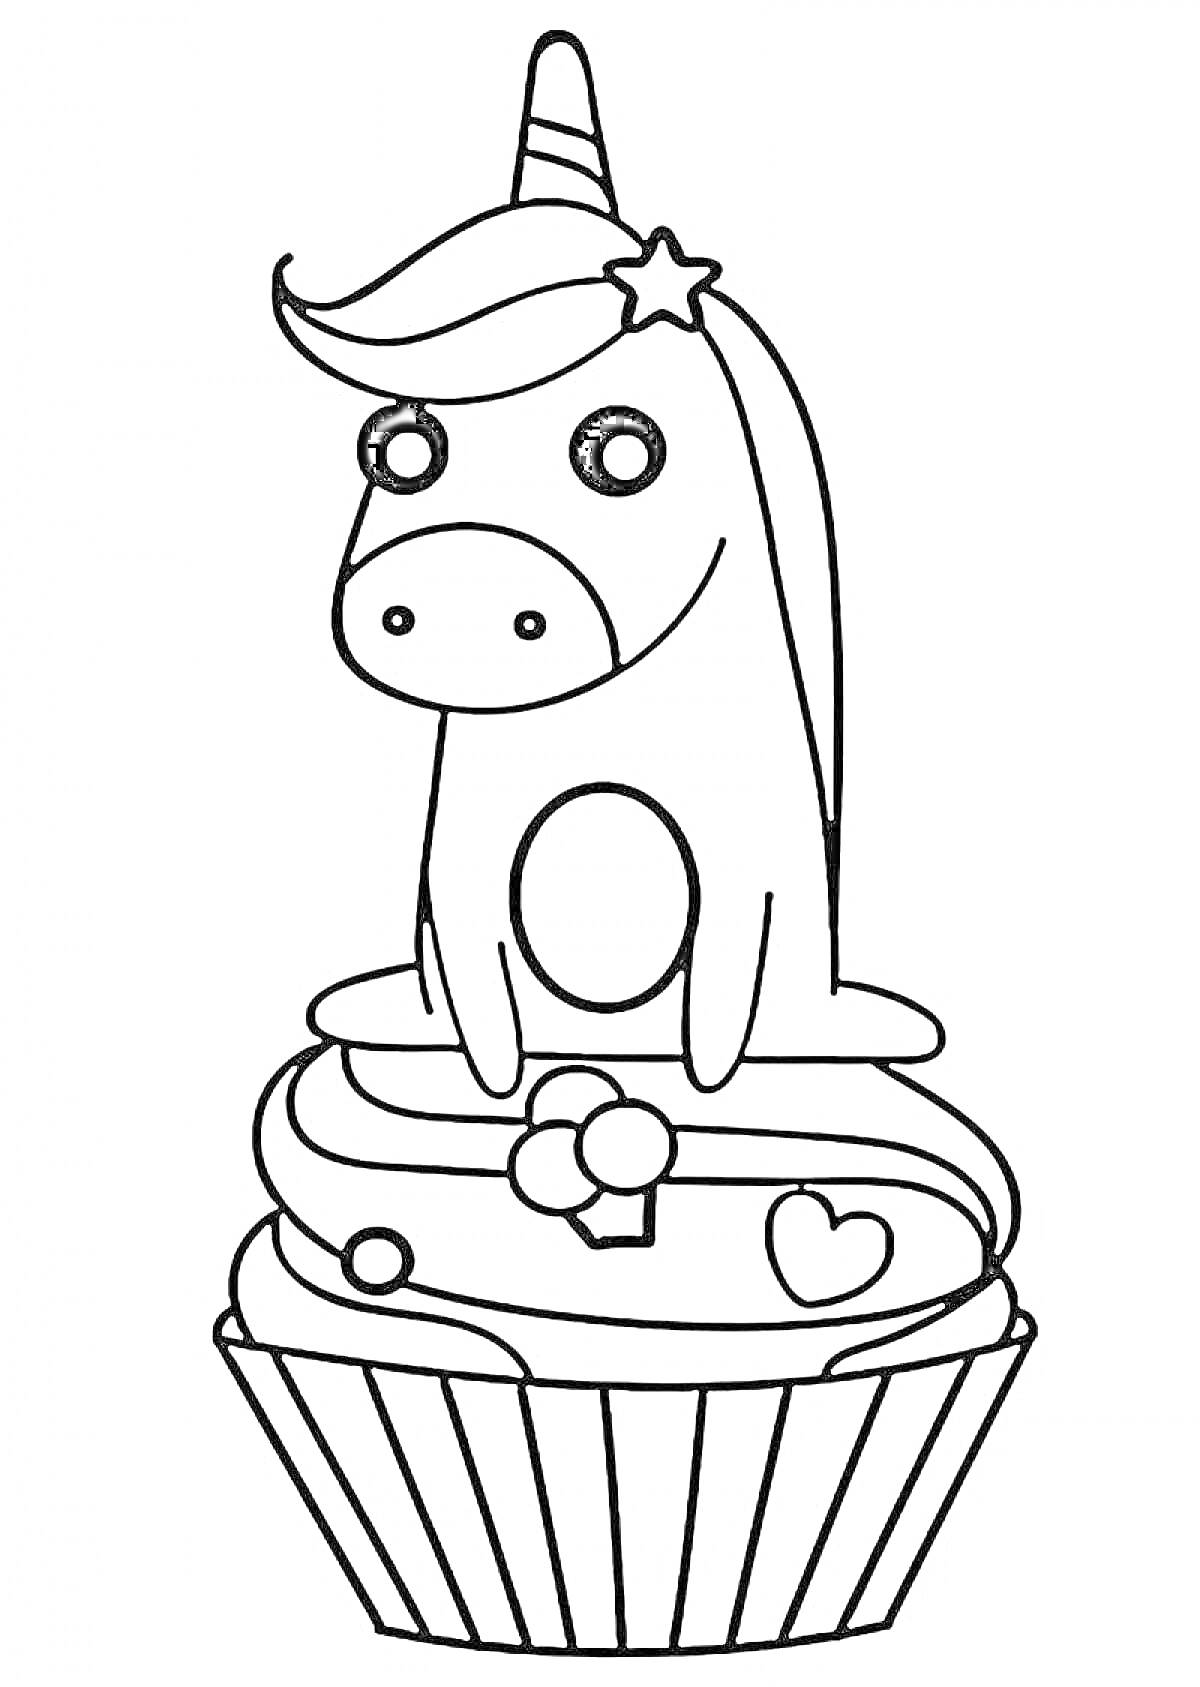 Раскраска Единорог на вершине кекса с украшениями